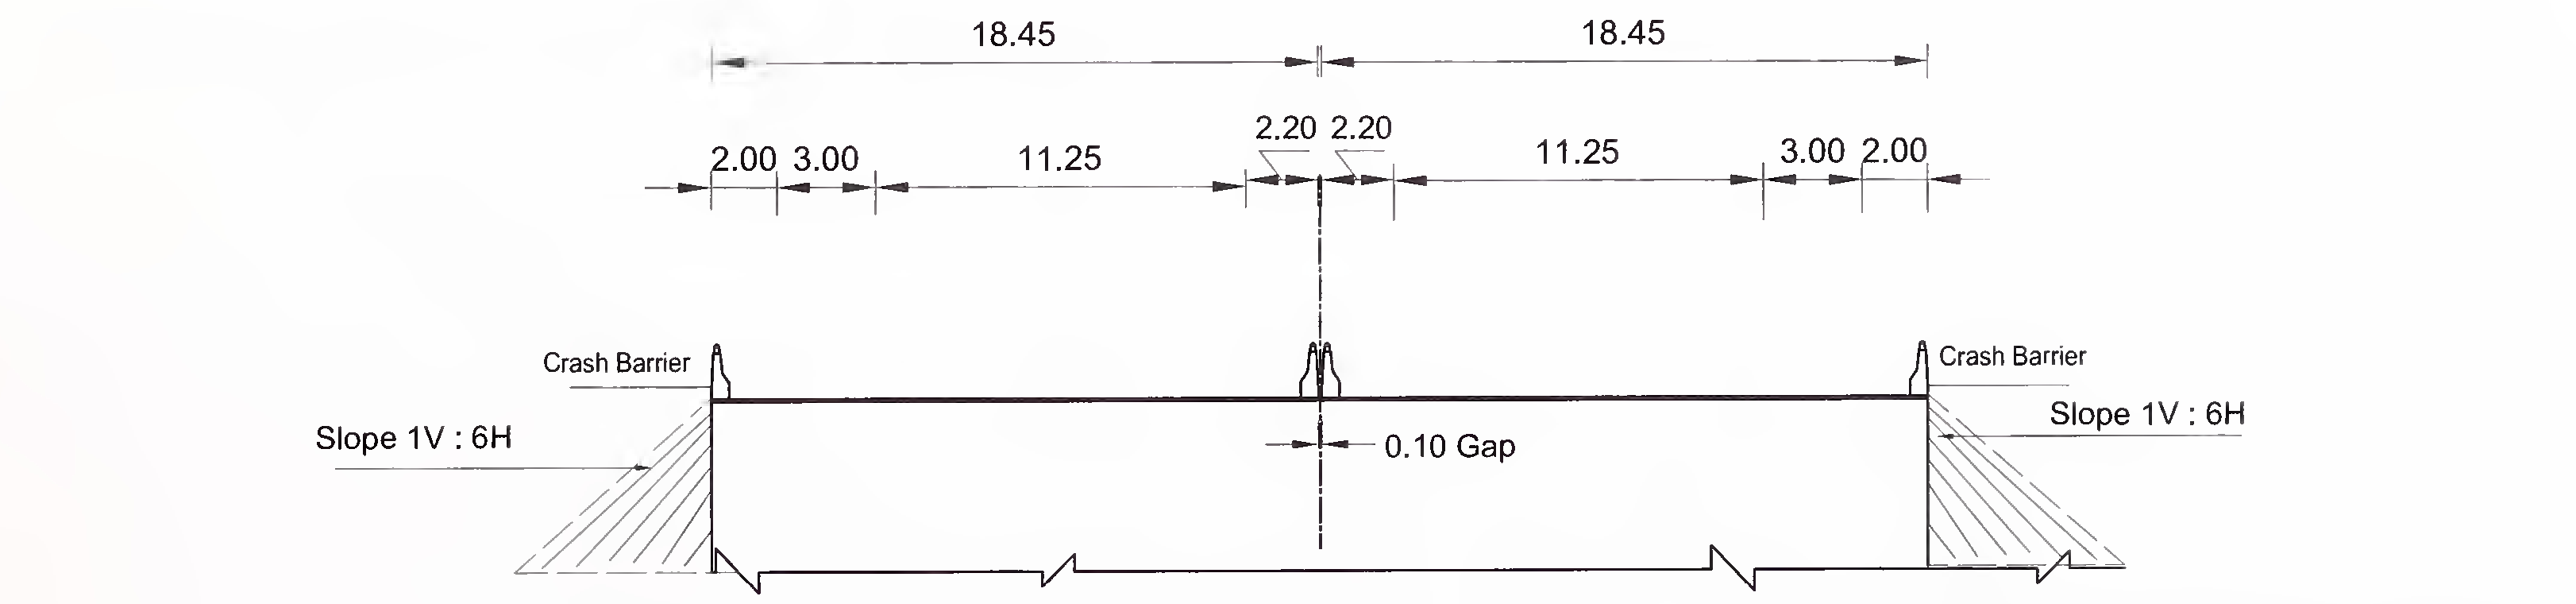 ਚਿੱਤਰ 6.4 (ਅ) ਫਲੈਸ਼ ਮੇਡਿਅਨ ਦੇ ਨਾਲ 6-ਲੇਨ (2 × 3) ਐਕਸਪ੍ਰੈਸ ਹਾਈਵੇ ਲਈ ਸਲੈਬ ਅਤੇ ਬਾਕਸ ਟਾਈਪ ਕੁਲਵਰਟ ਦਾ ਖਾਸ ਕਰਾਸ-ਸੈਕਸ਼ਨ